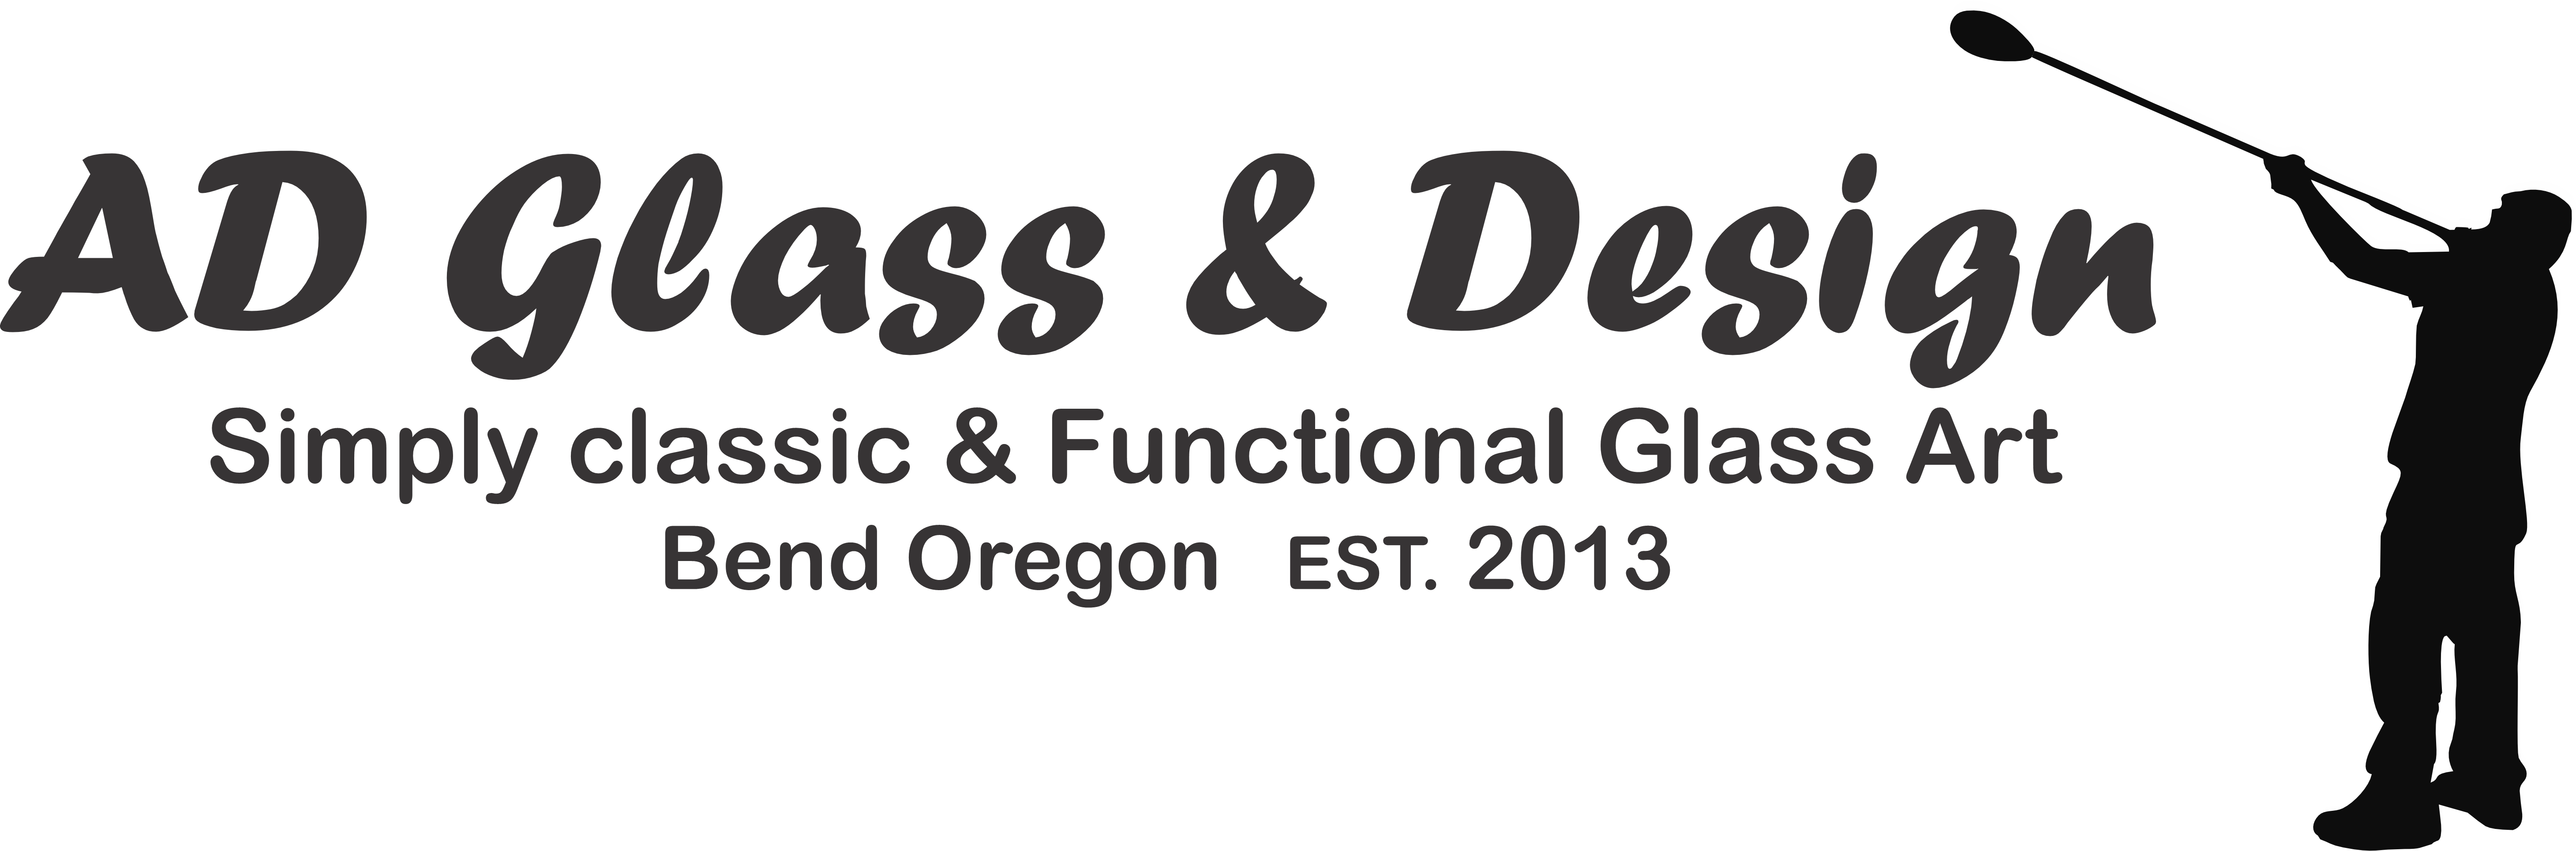 AD Glass & Design Logo